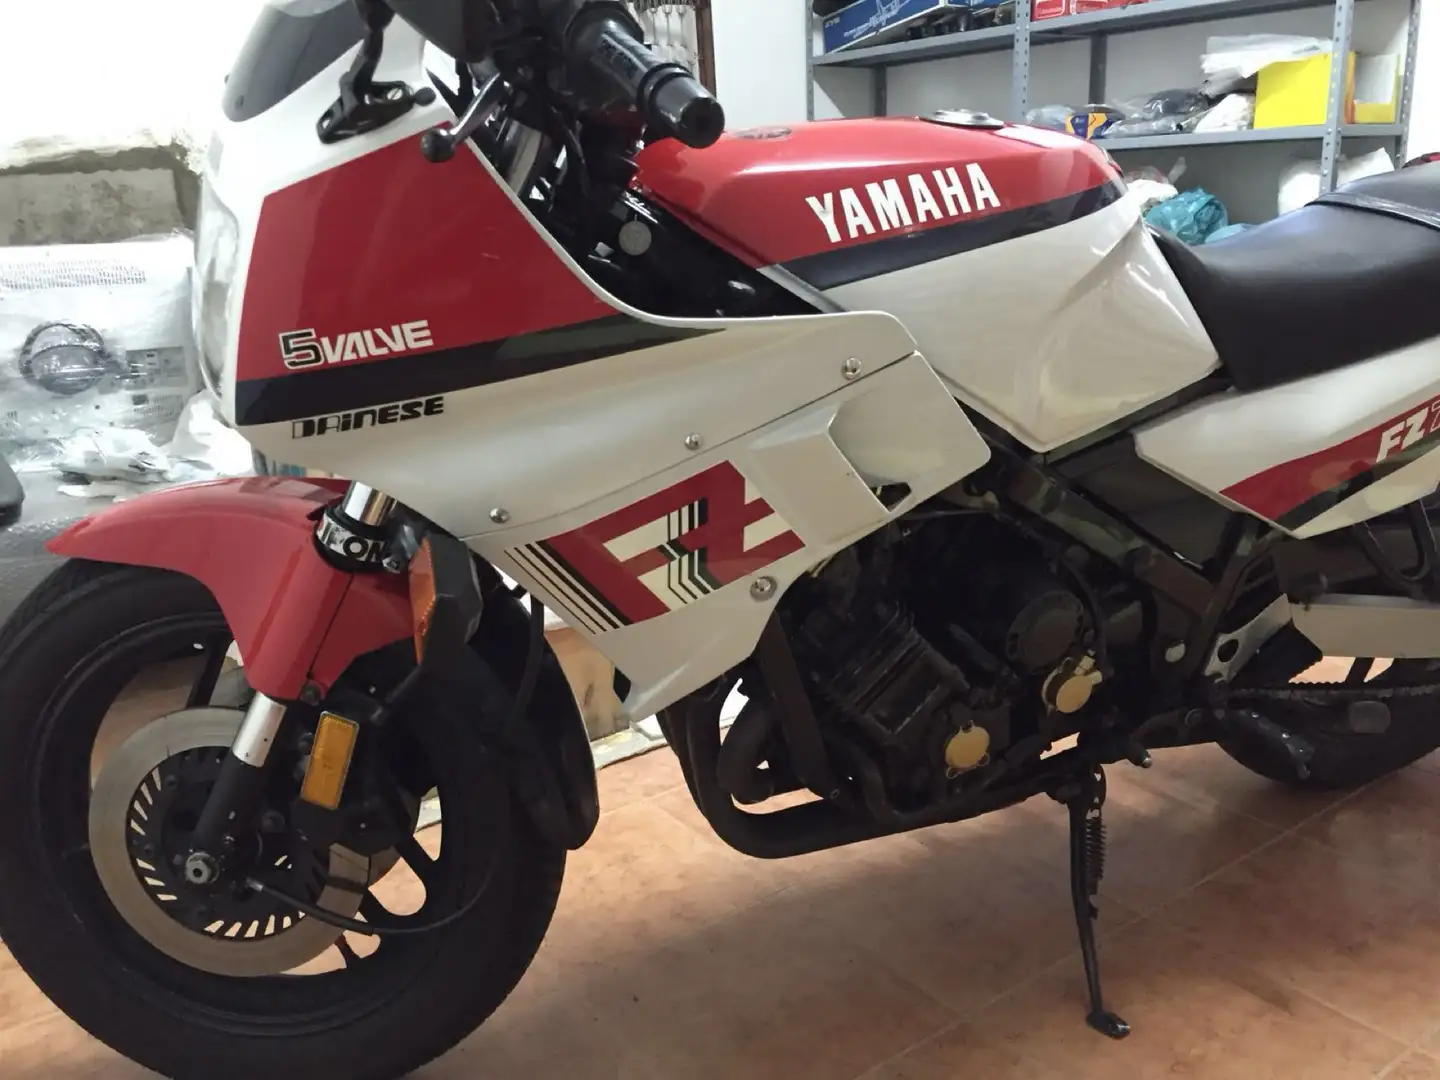 Yamaha FZ 750 immatricolazione canada colorazione bianca rossa Bianco - 1